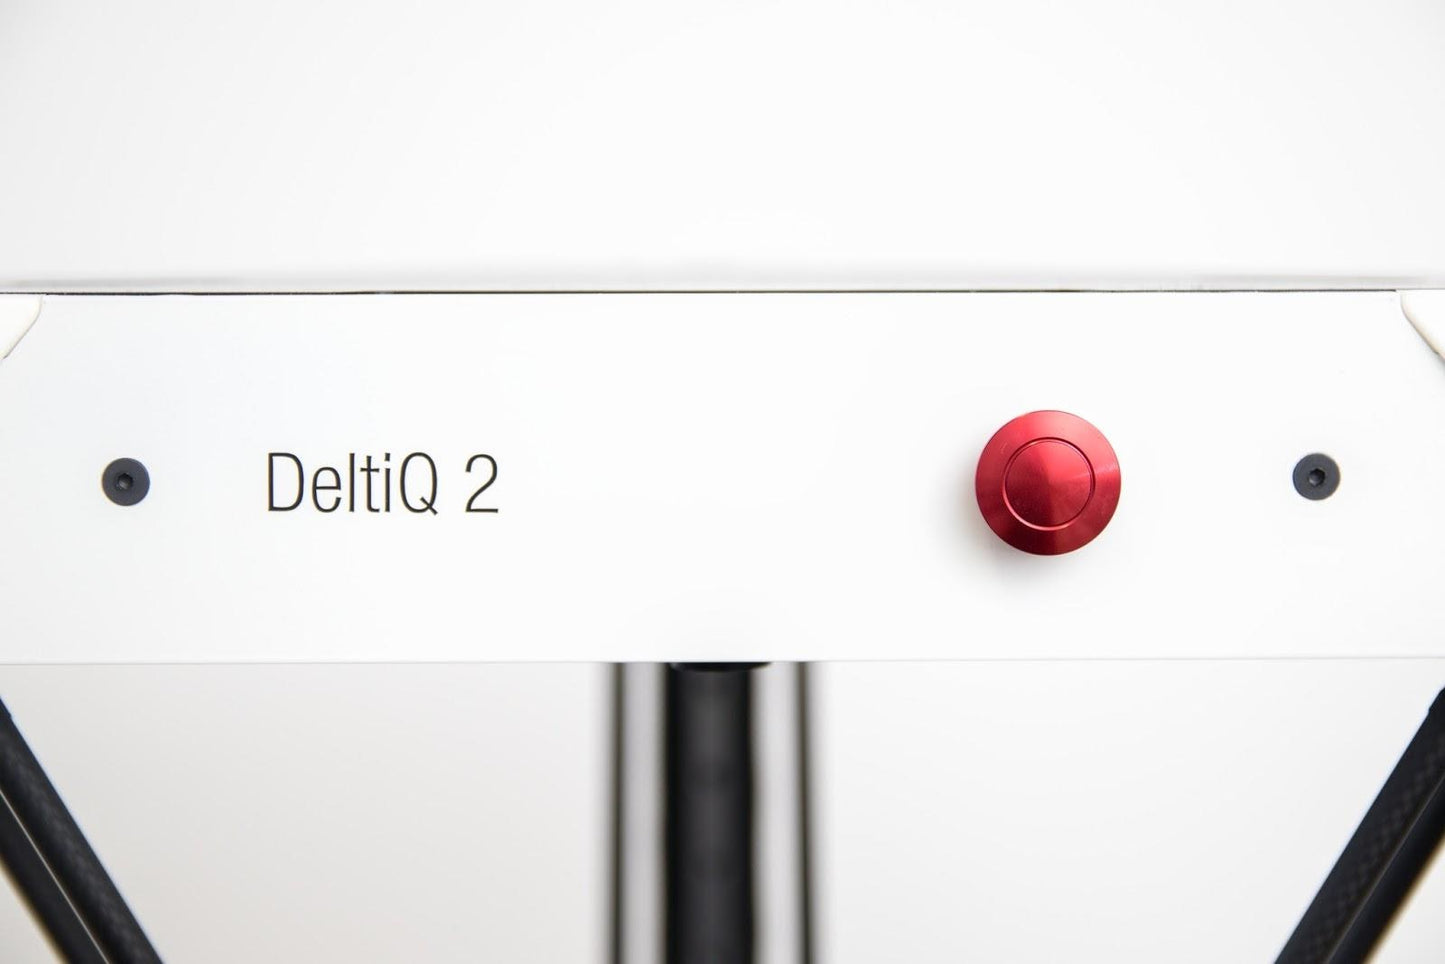 DeltiQ 2 and DeltiQ 2 Plus